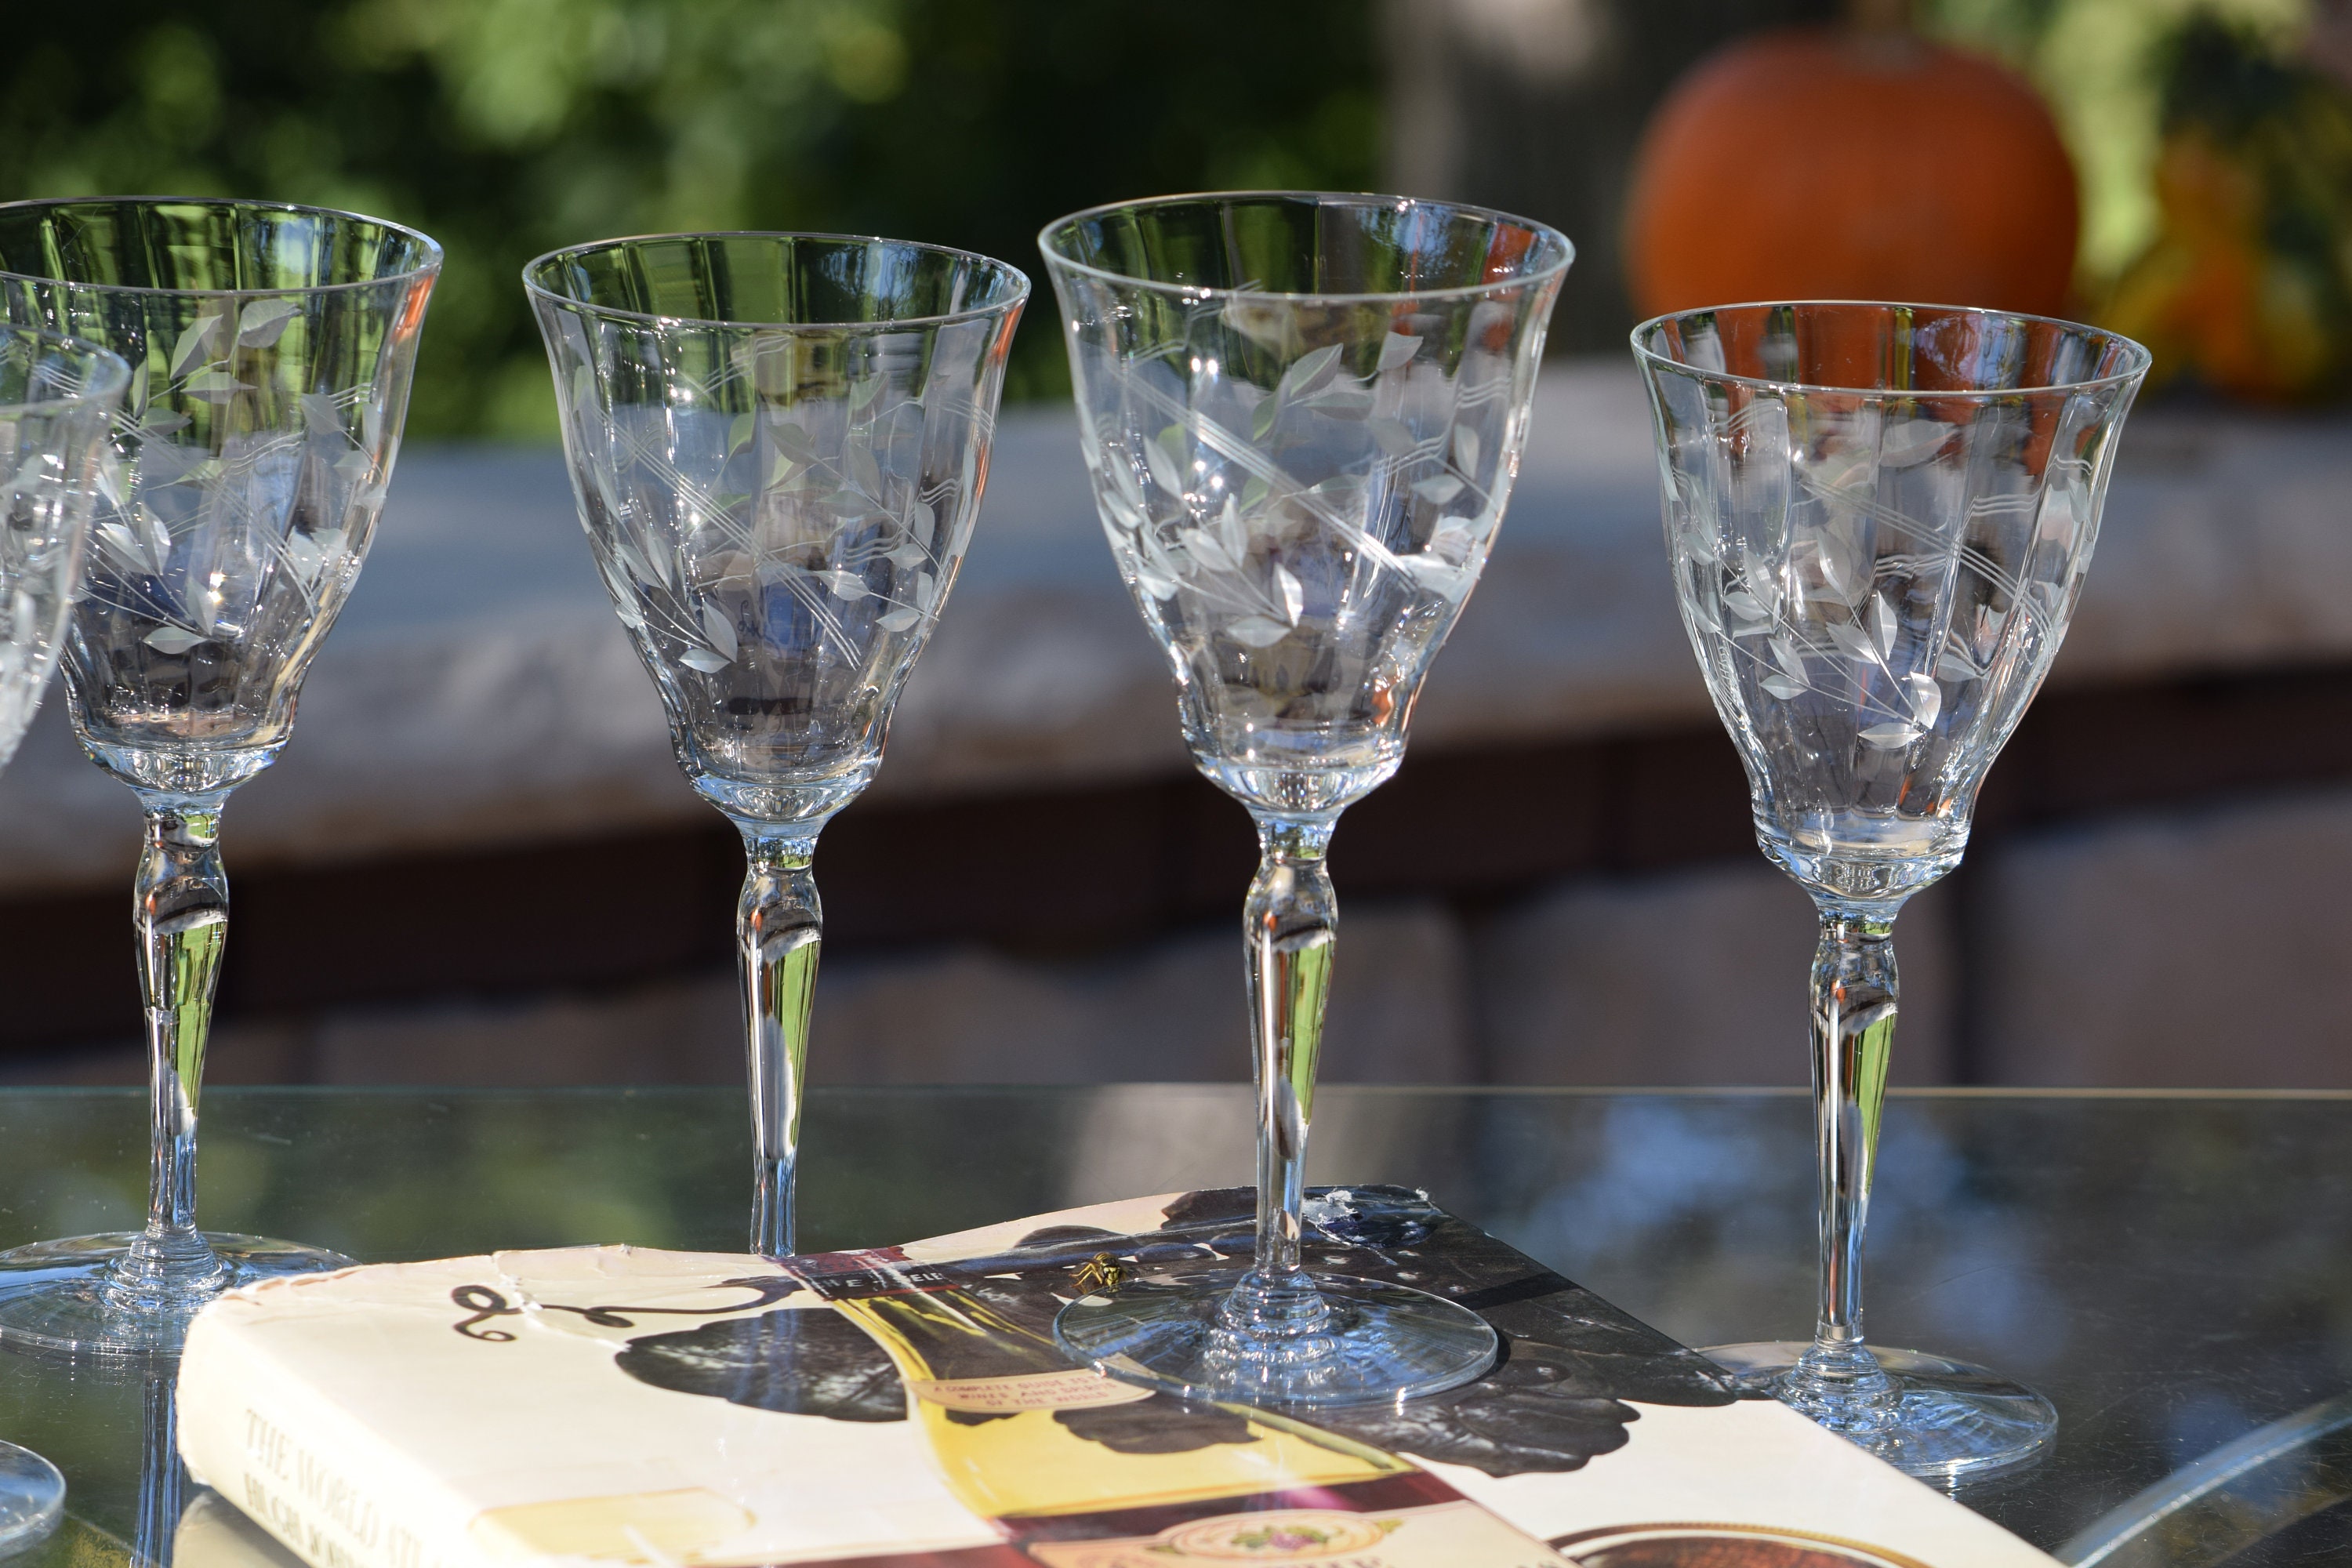 6 Vintage Etched Wine Glasses ~ Water Goblets, 8 oz Wine glasses